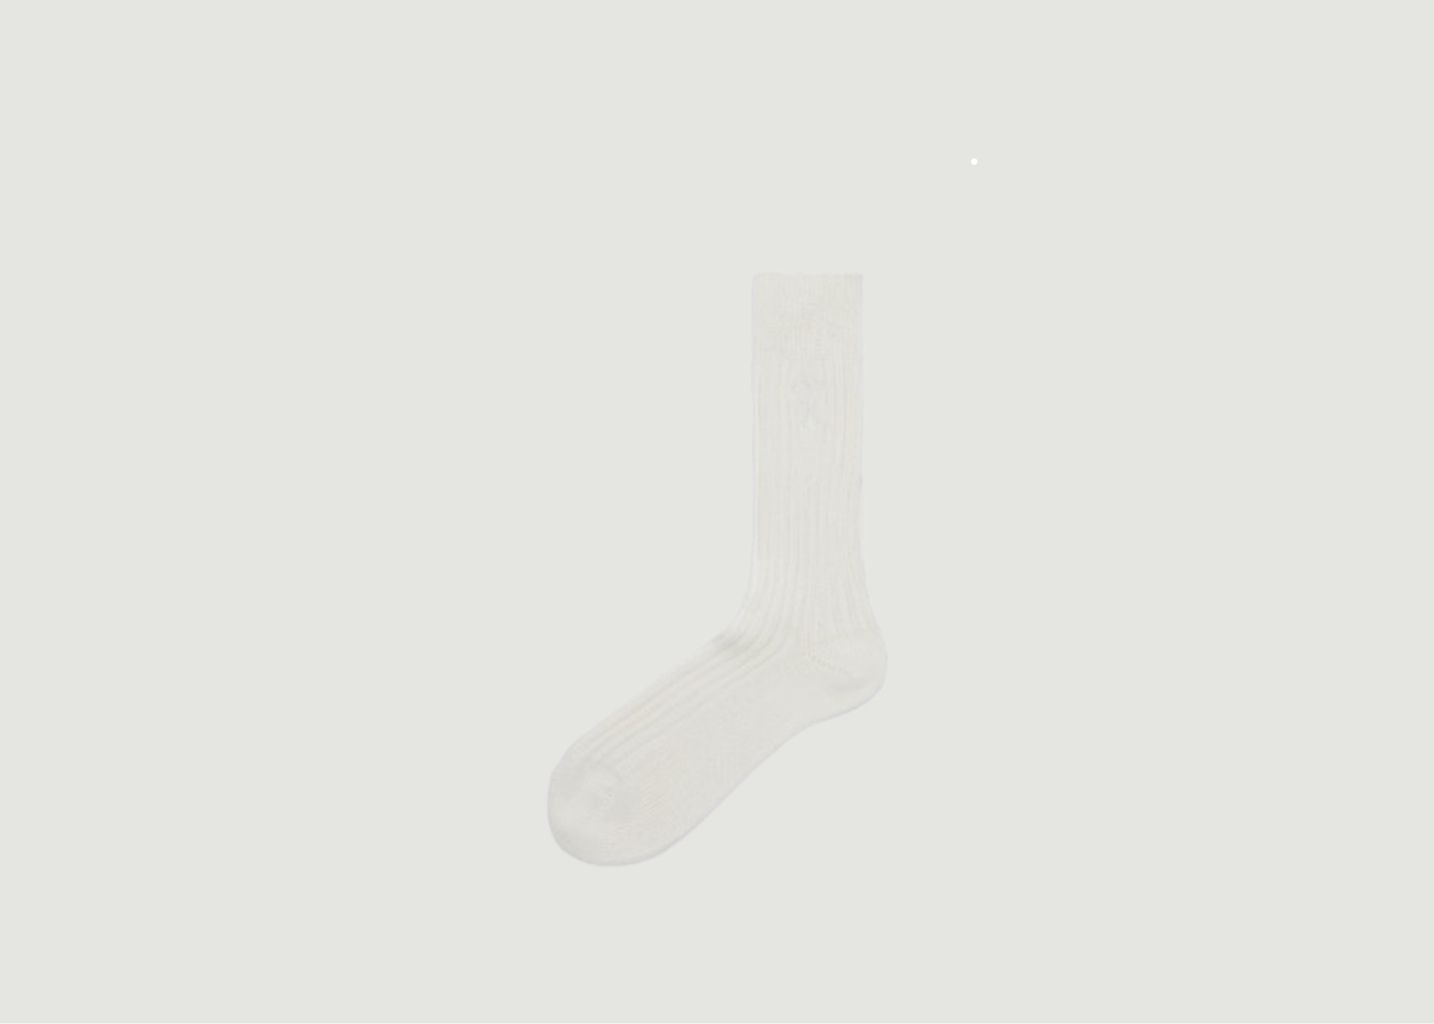 Pair of plain cotton blend socks - AMI Paris